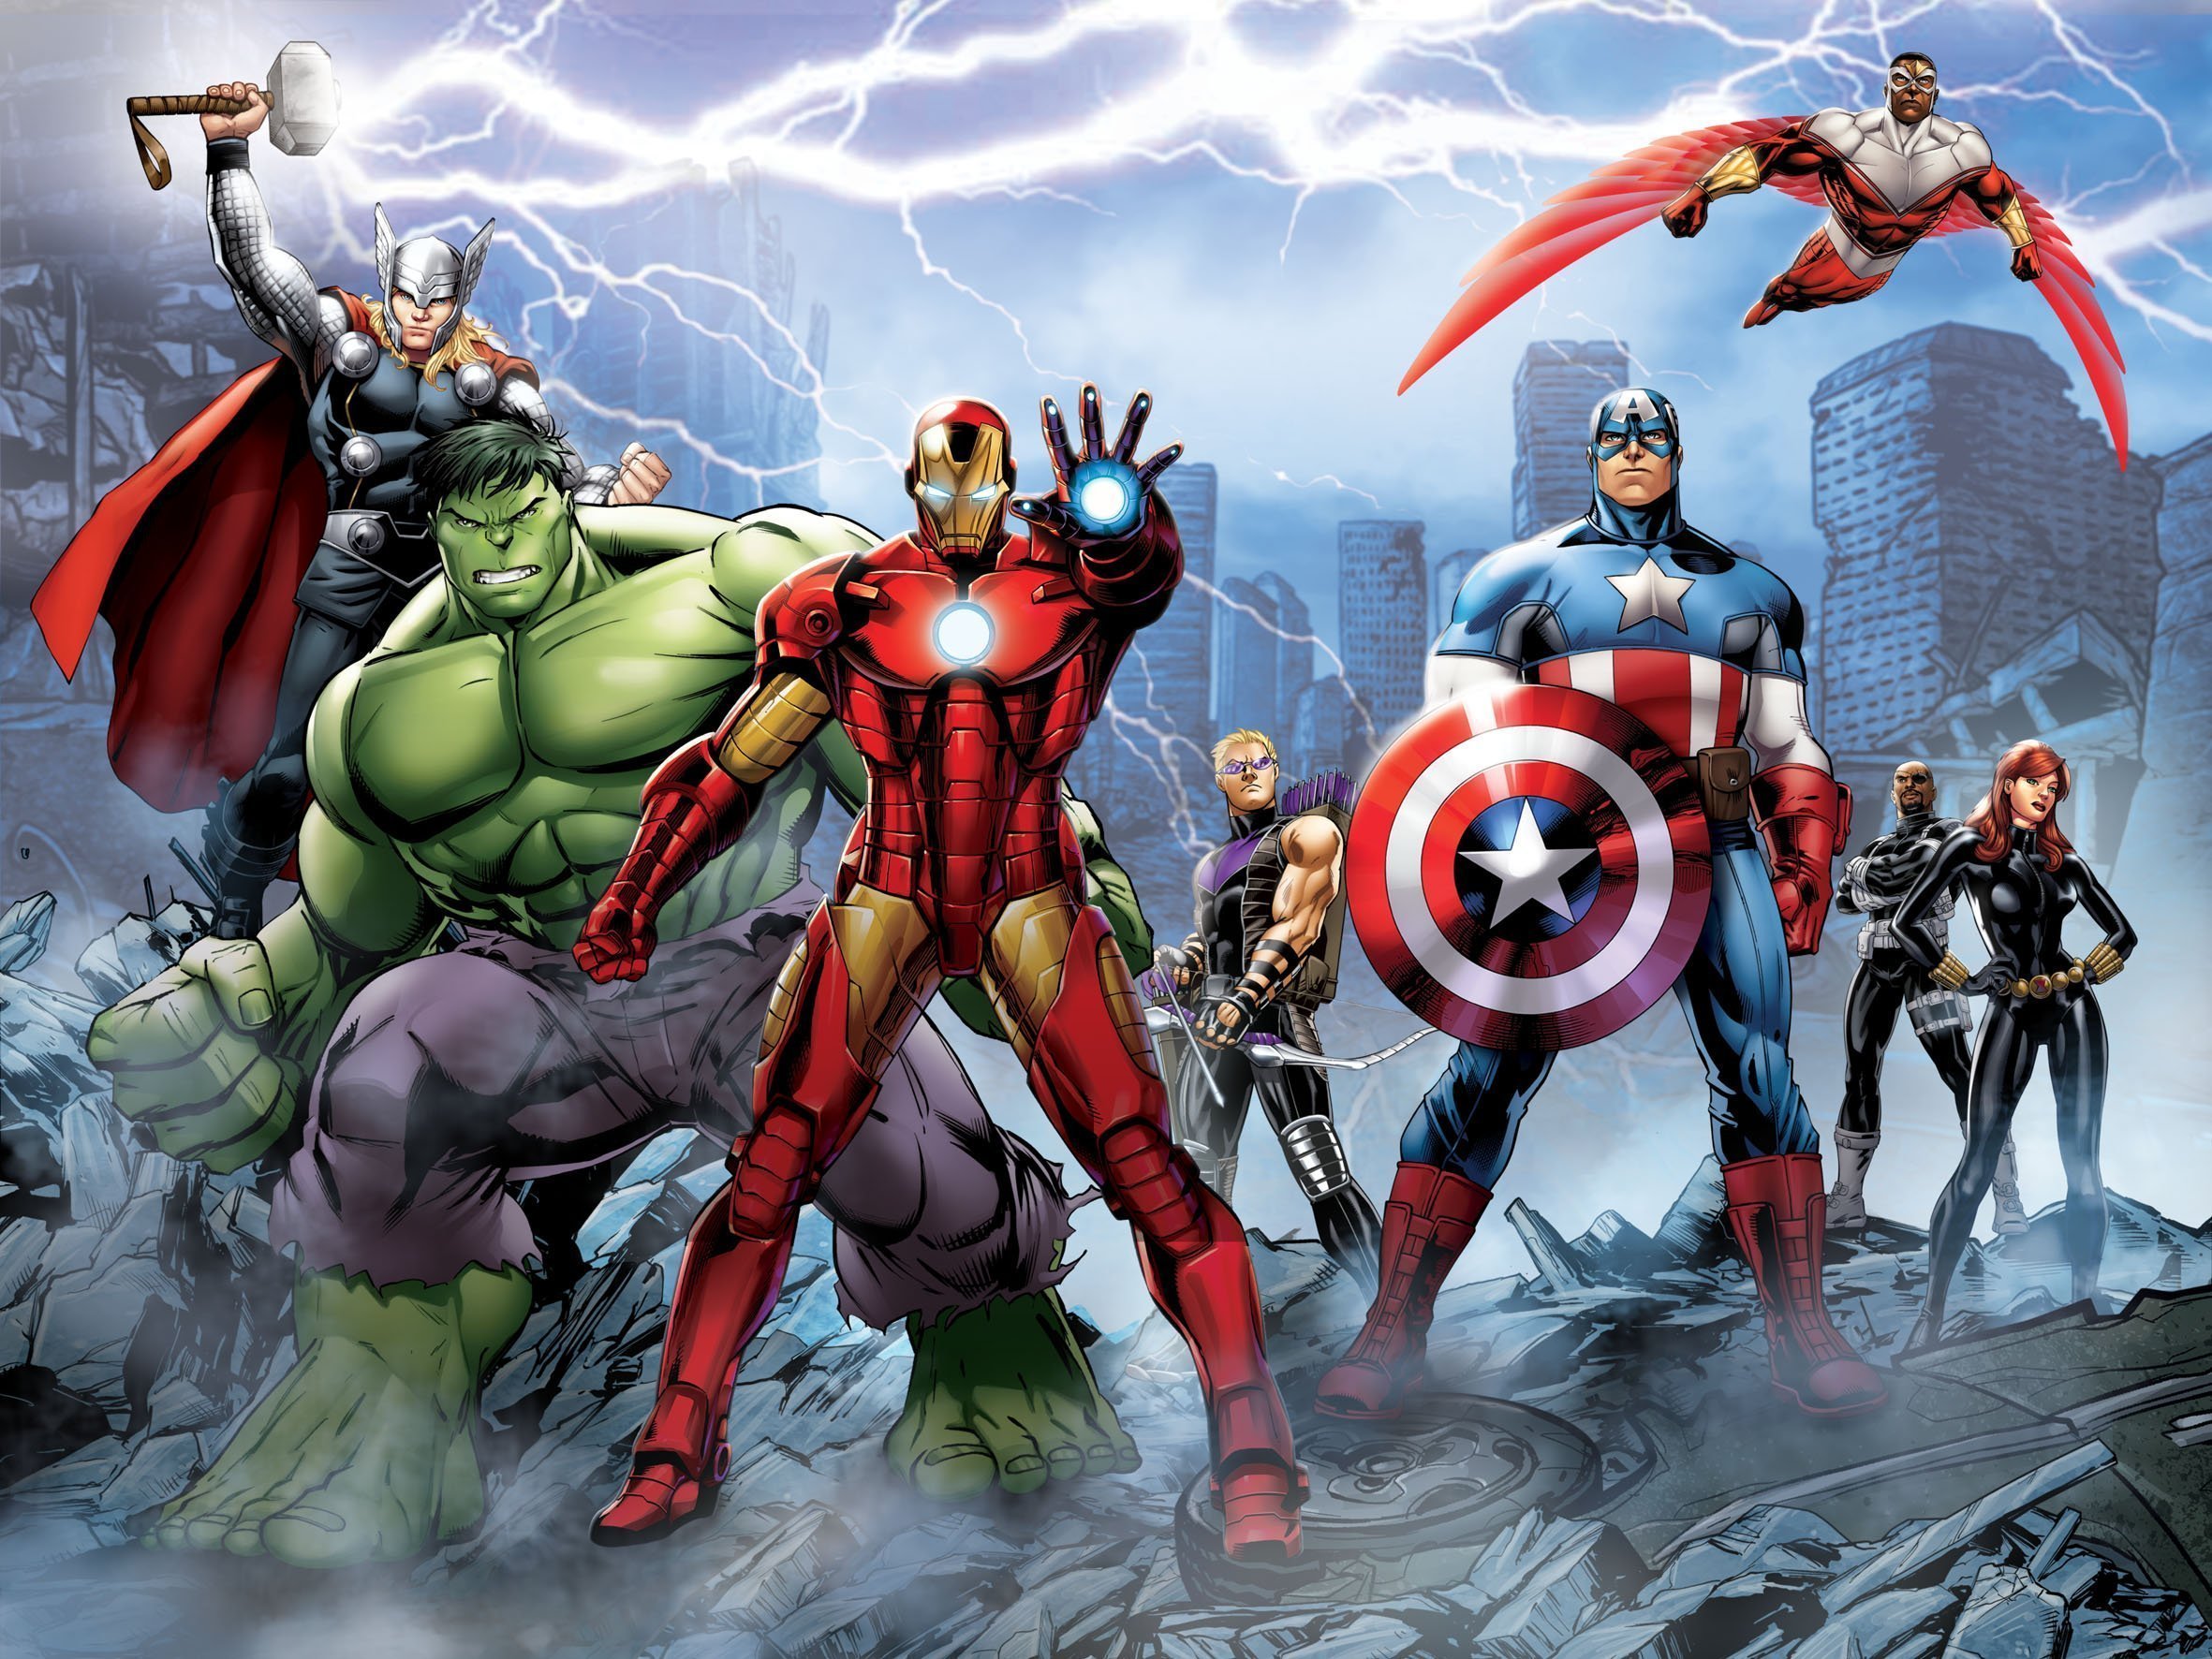 Герои сильнее вместе. Комиксы Авенгерс Марвел. Фотообои Мстители Авенгерс. Marvel герои. Вселенная Марвел Мстители.